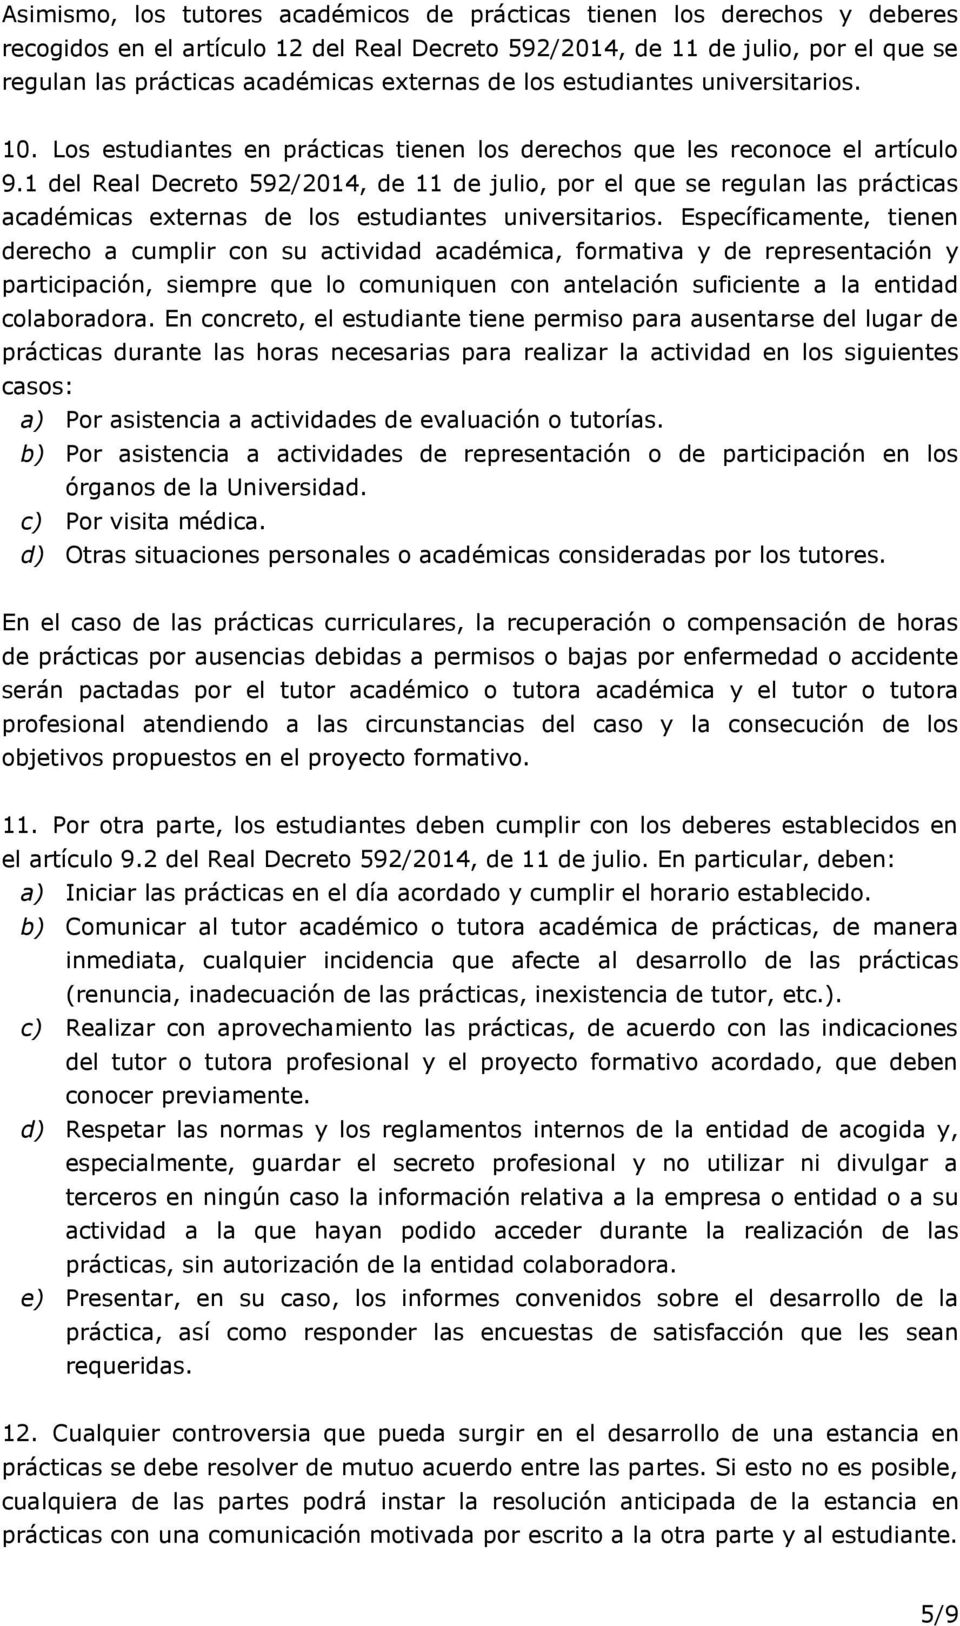 1 del Real Decreto 592/2014, de 11 de julio, por el que se regulan las prácticas académicas externas de los estudiantes universitarios.